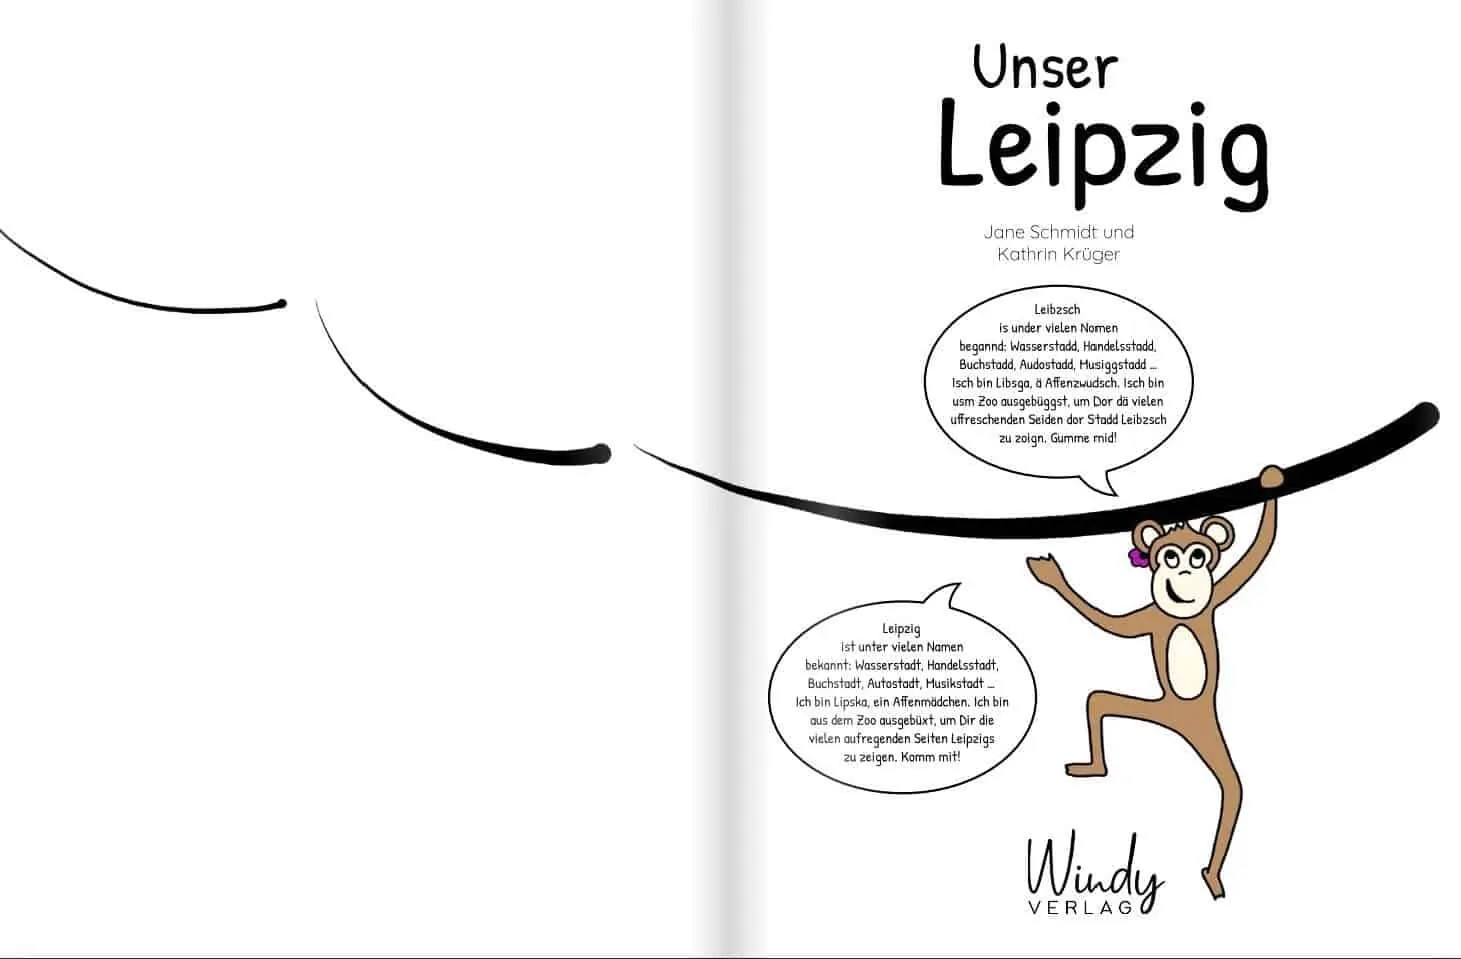 Erste Seite von "Unser Leipzig" von Jane Schmidt